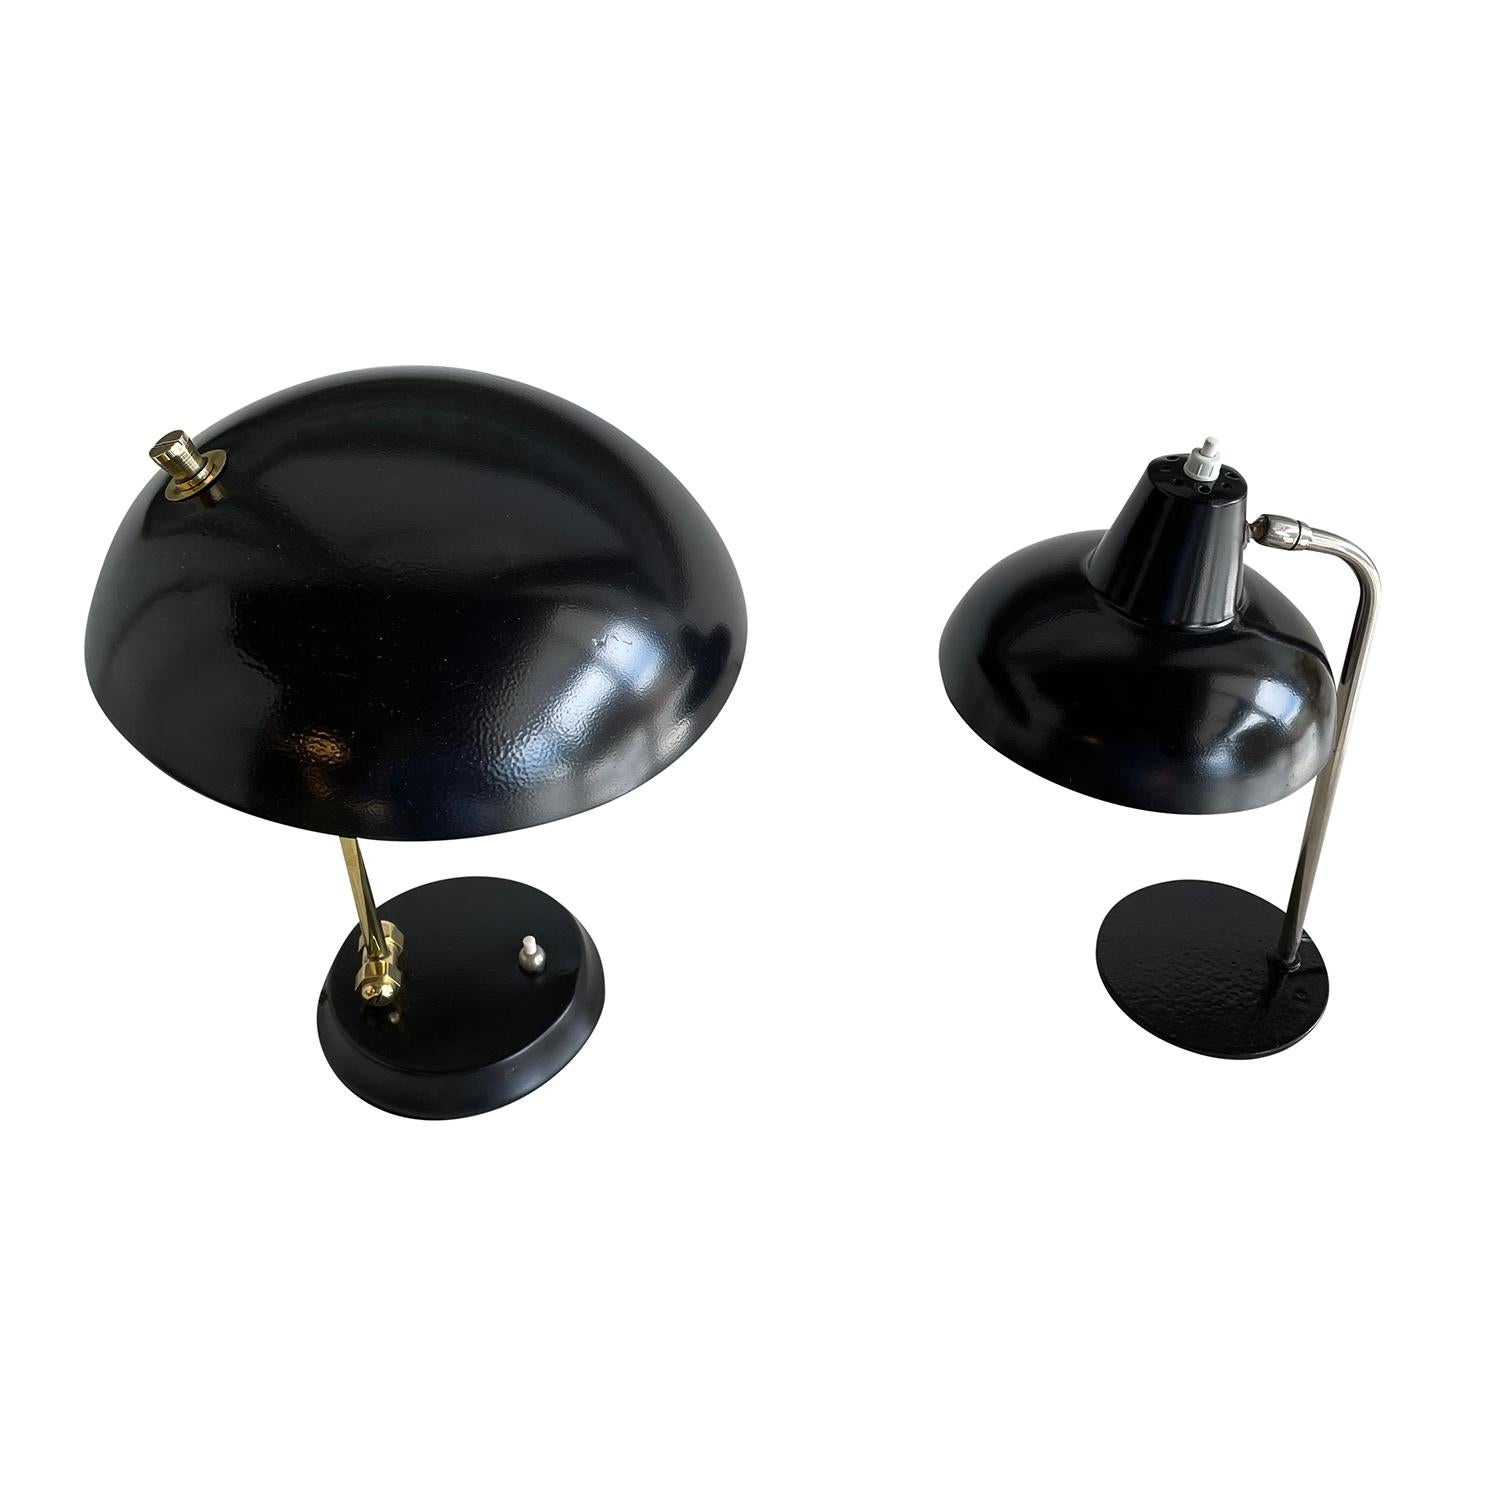 Paire de lampes de table similaires en métal peint de couleur noire, vintage Mid-Century Modern italien, en bon état. Le col de la petite lampe de bureau est en acier travaillé à la main, soutenu par une base métallique ronde, et la plus grande est